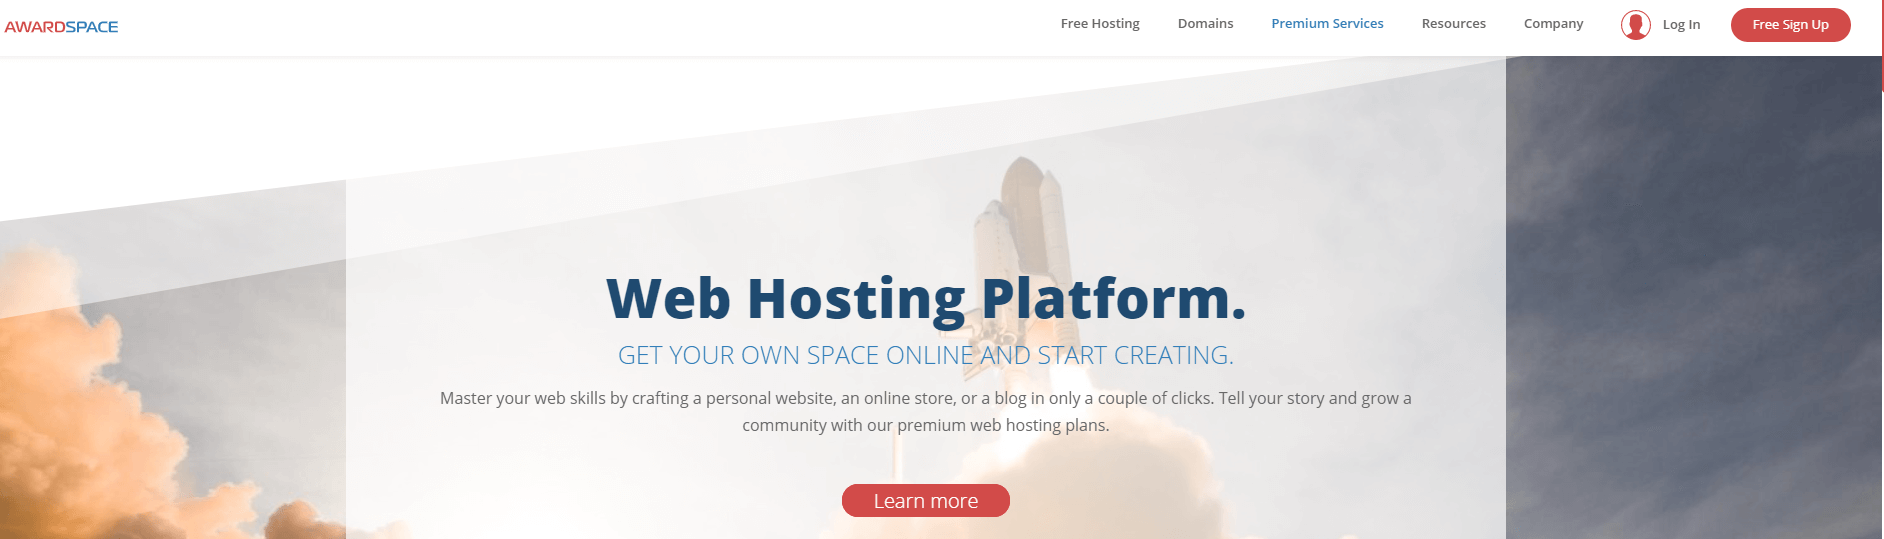 AwardSpace web hosting platform.